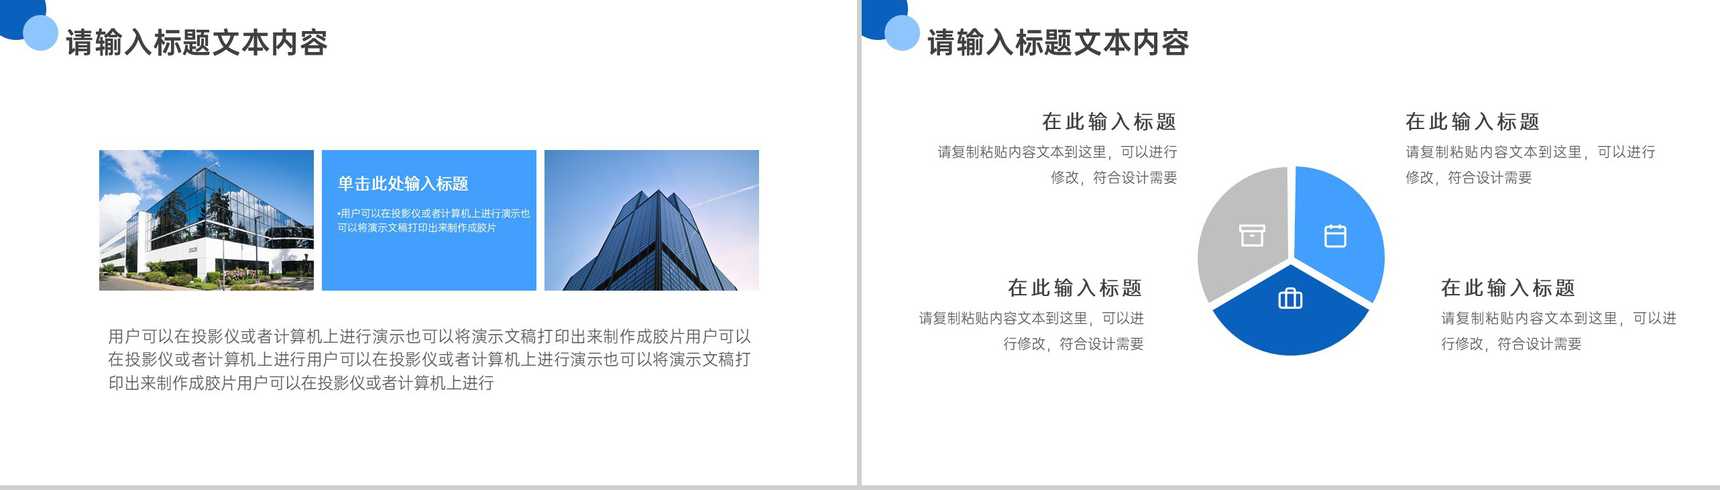 蓝白简约商务背景建筑公司企业介绍PPT模板-6